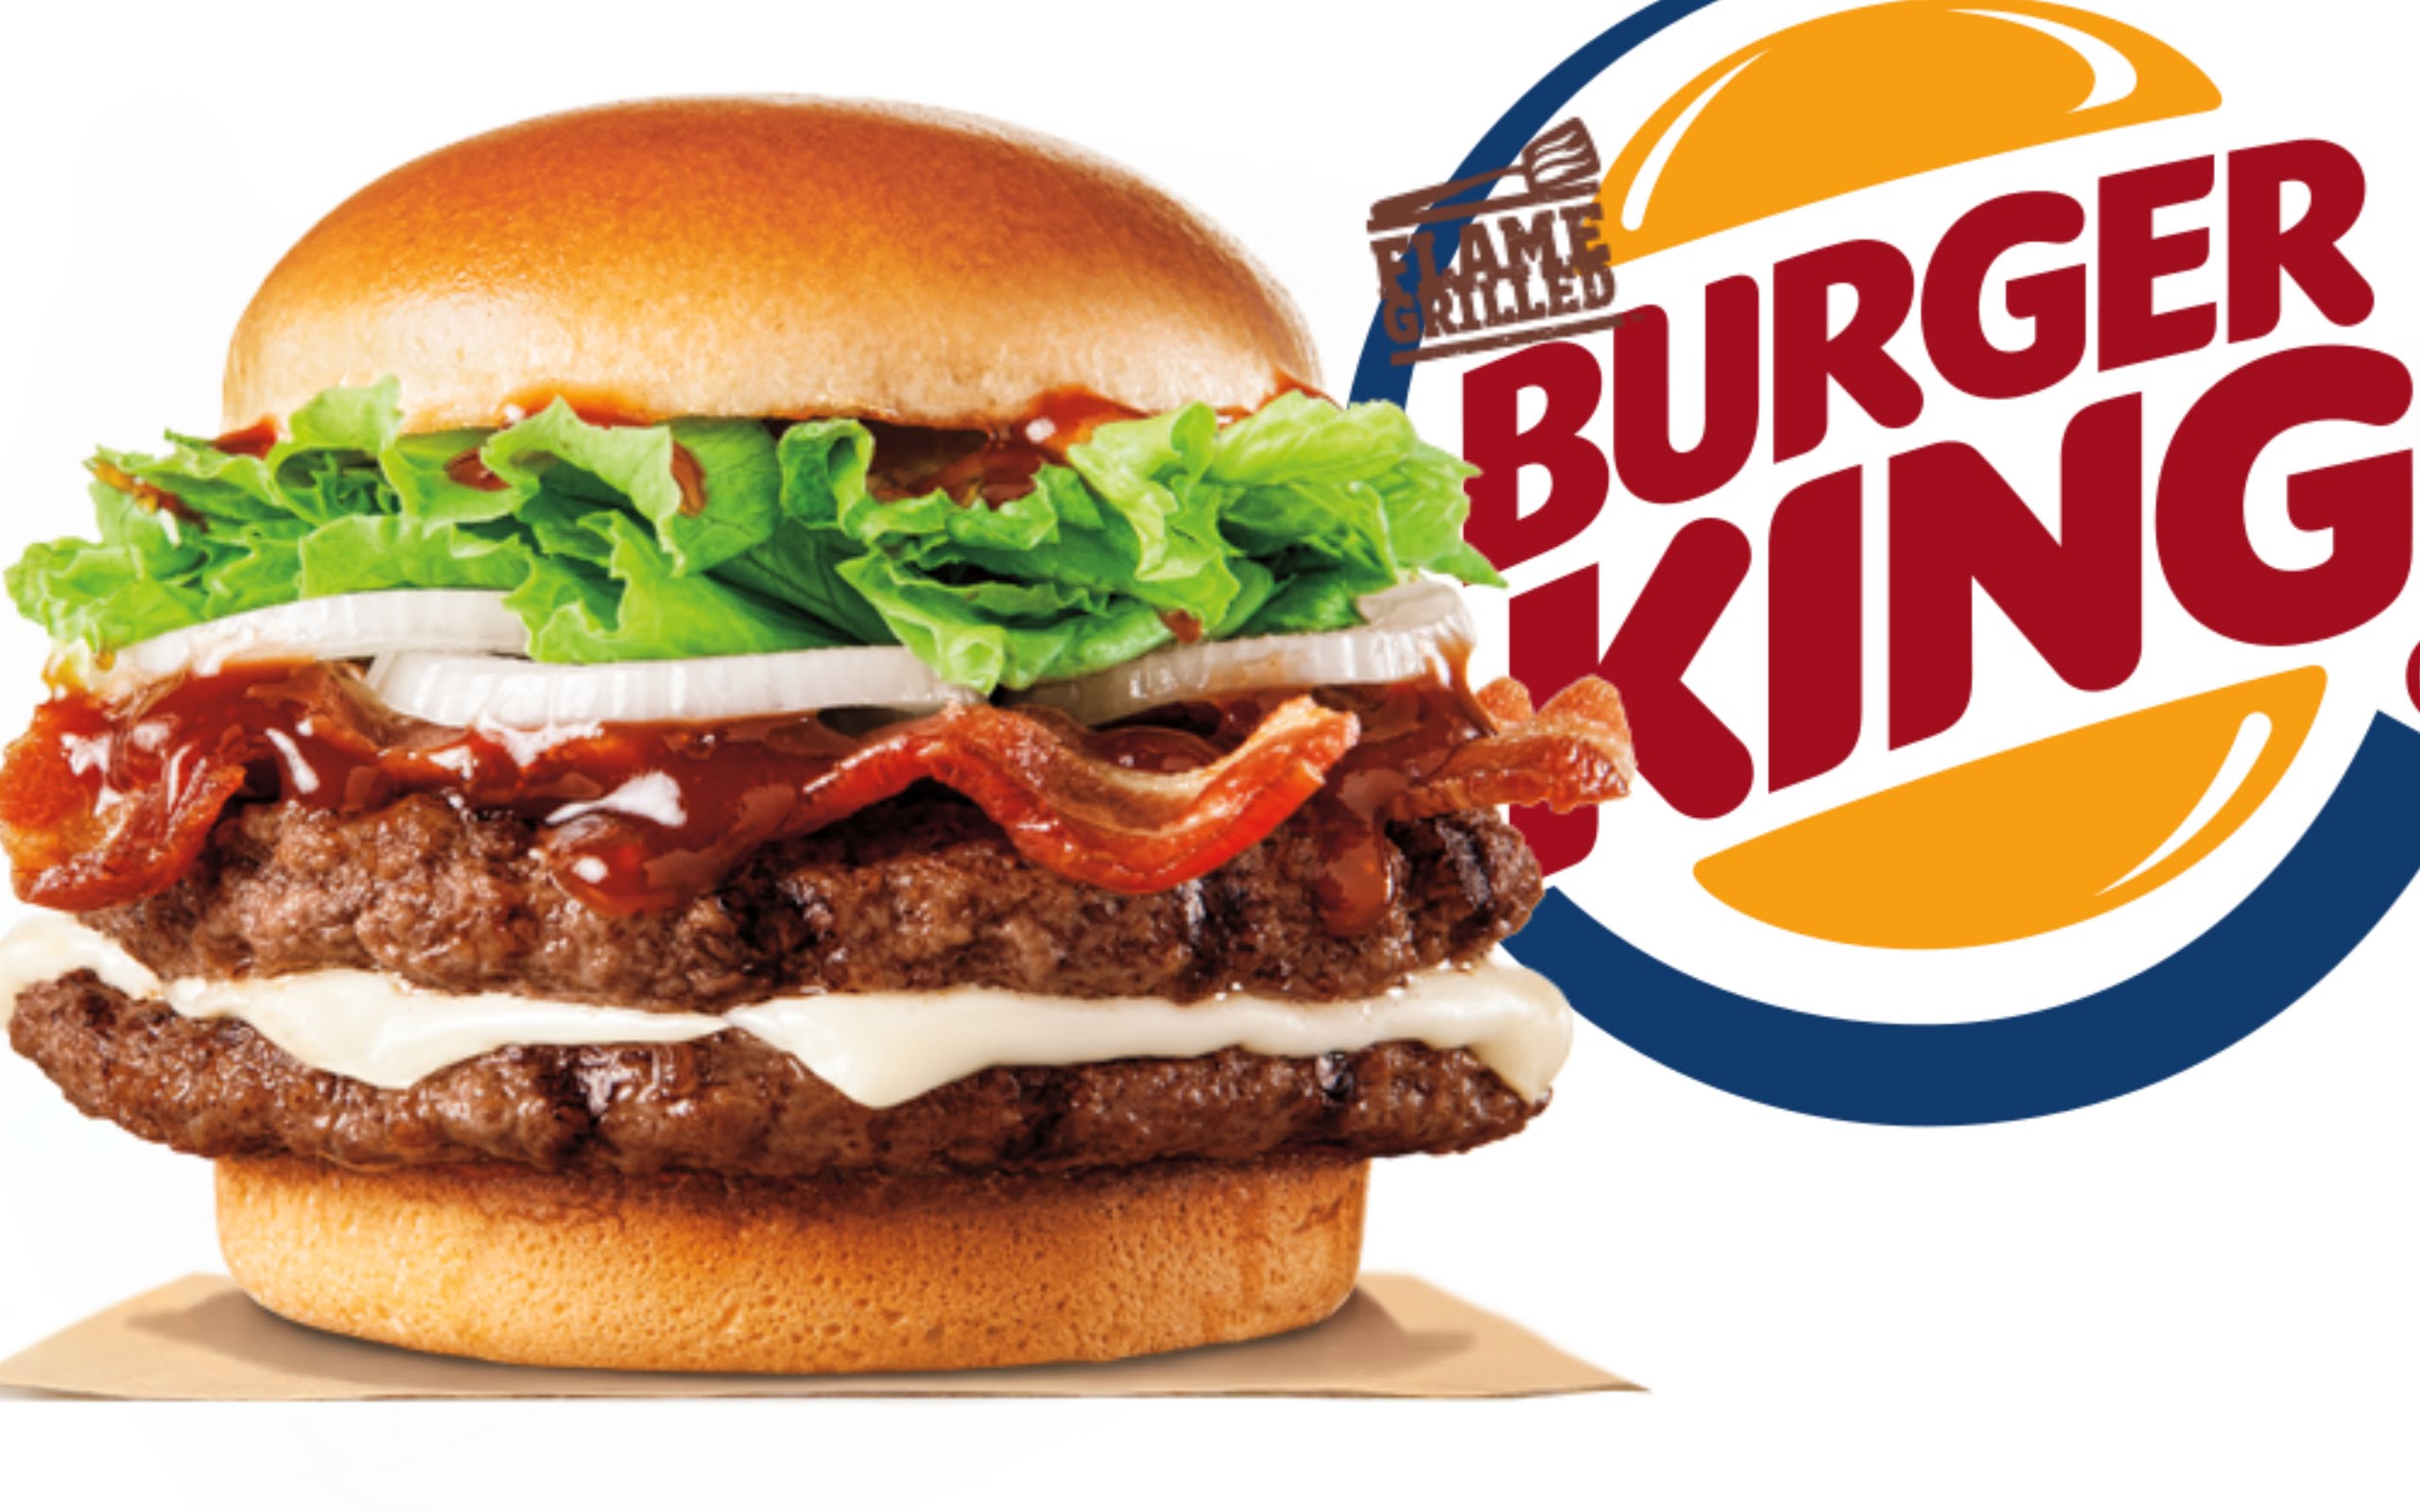 logo Burger King